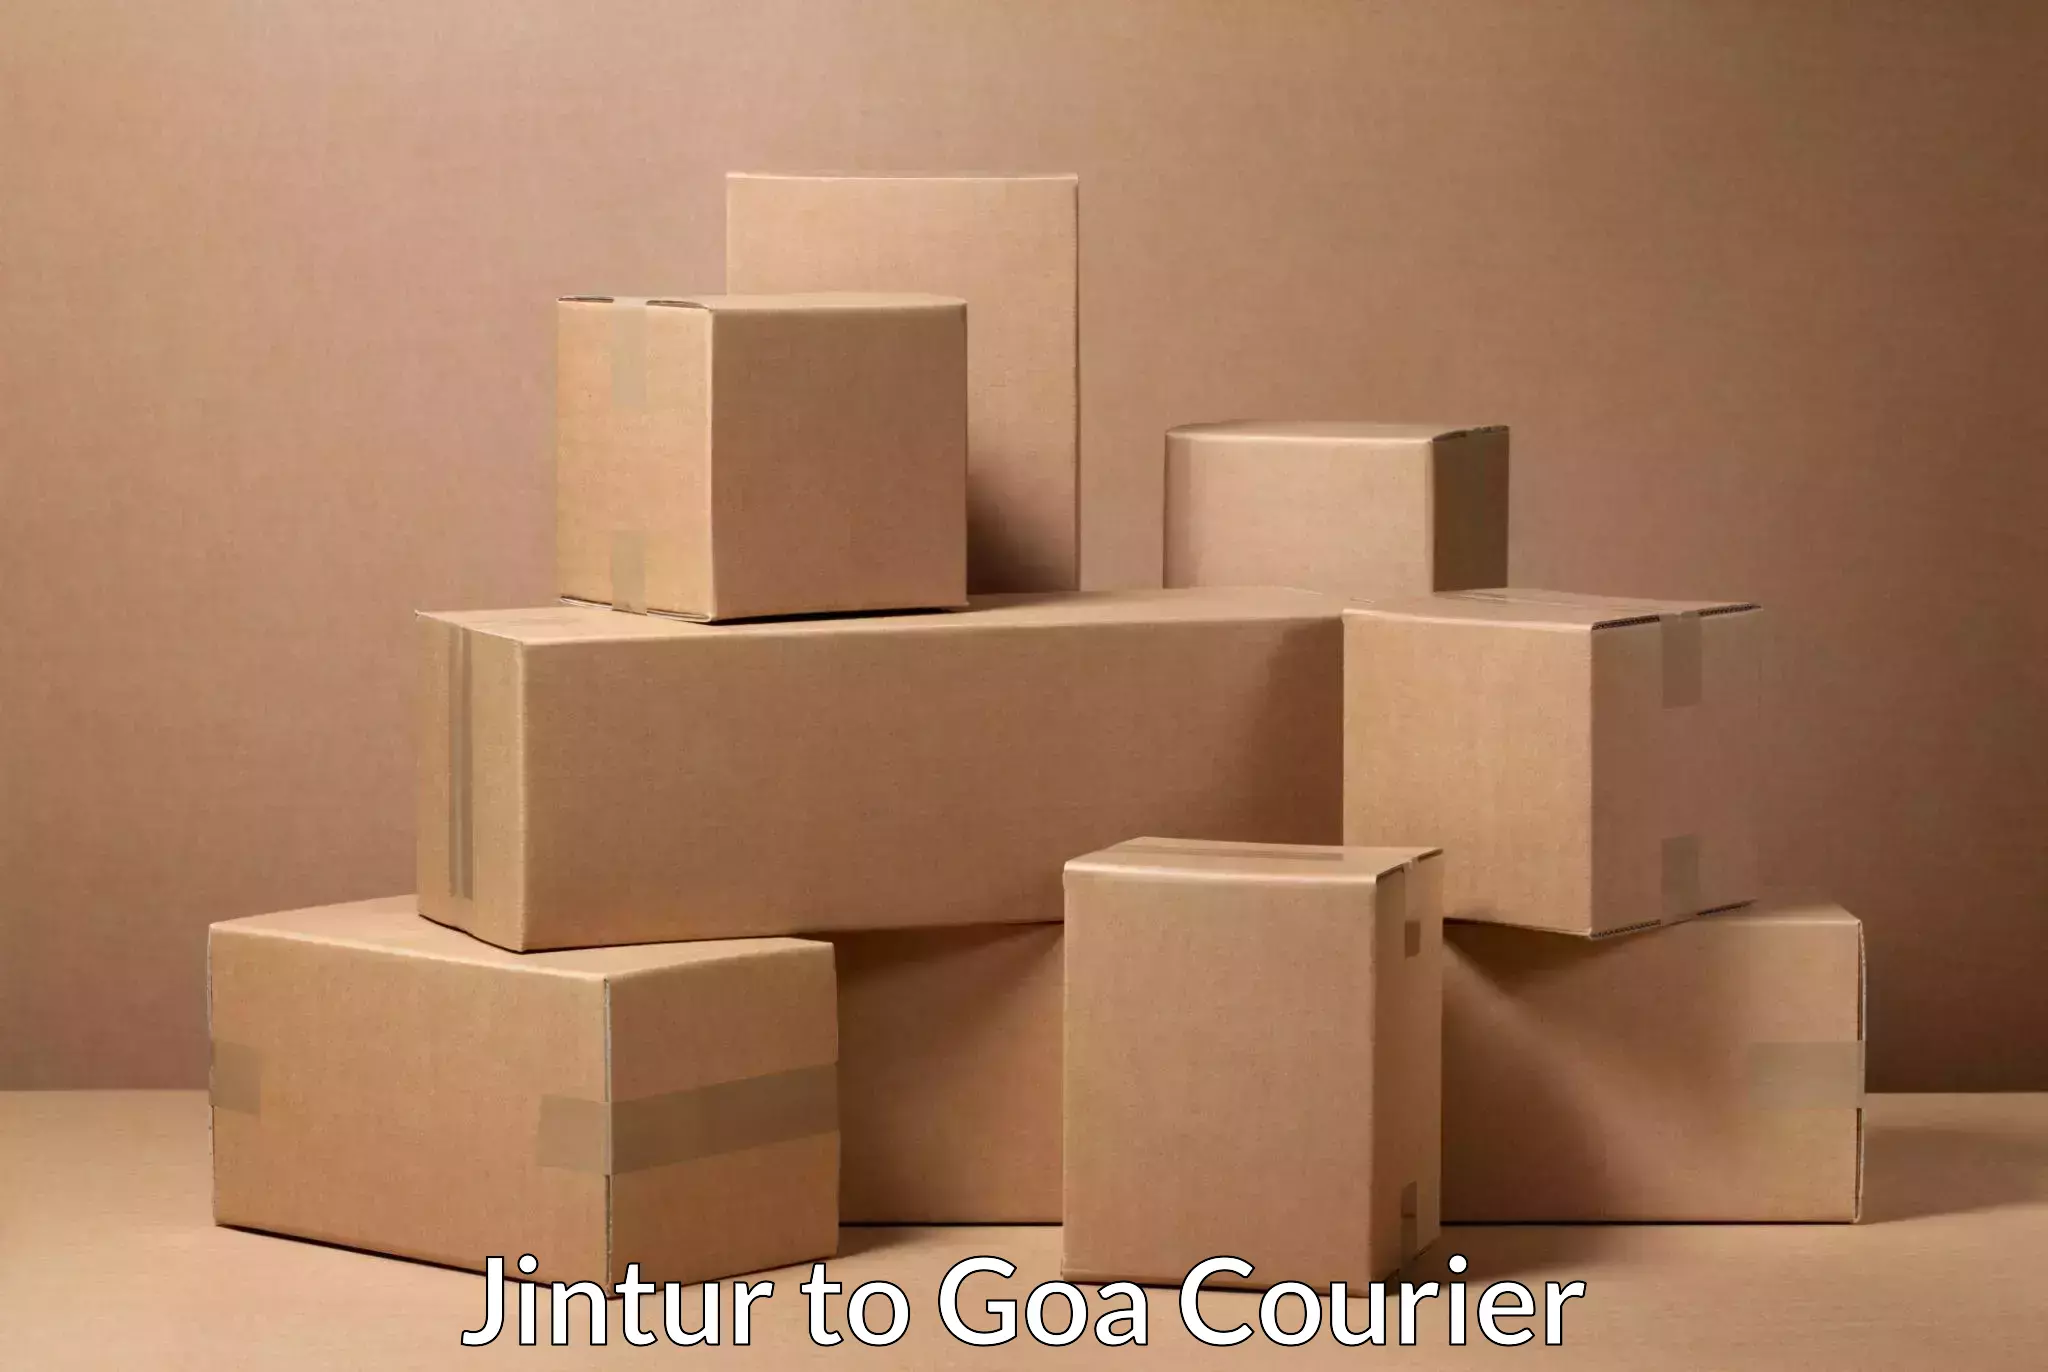 Individual parcel service Jintur to Goa